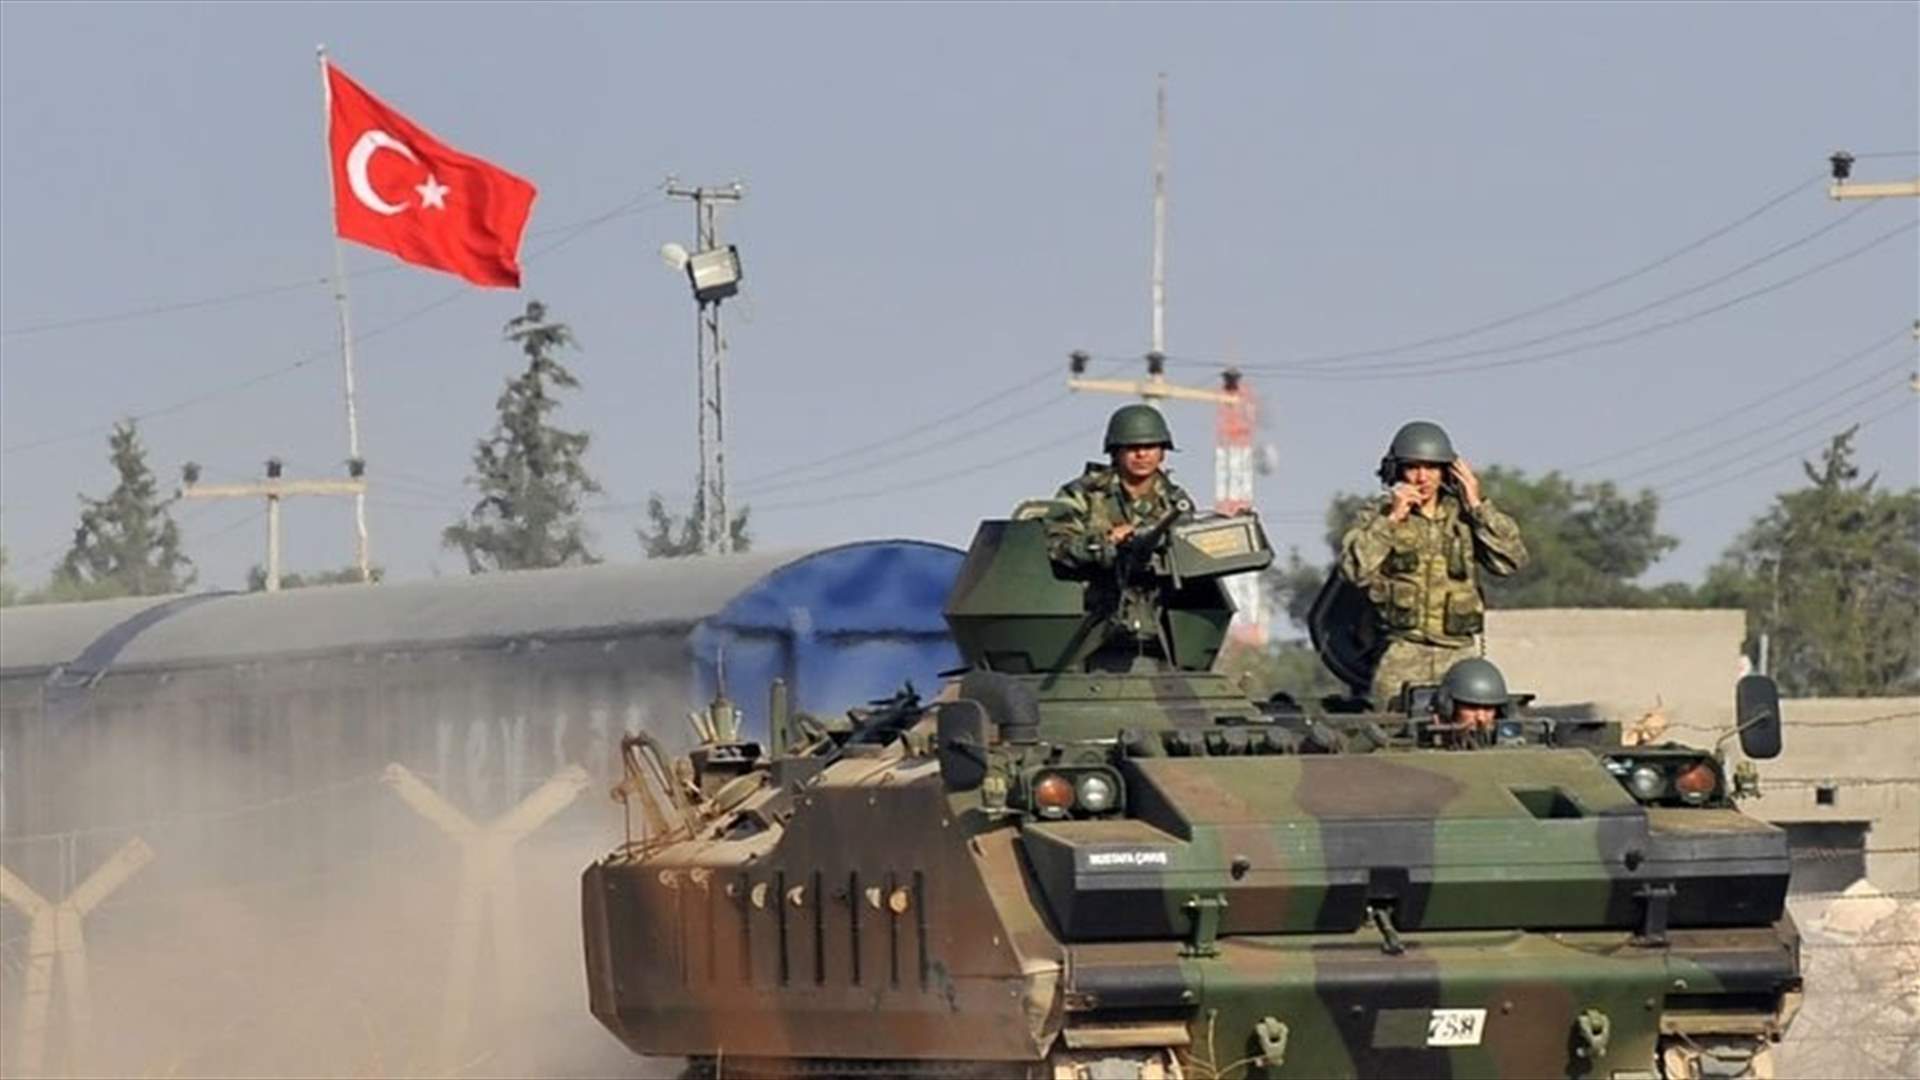 Turkey carries out air strikes against Kurdish militants in Iraq -NTV